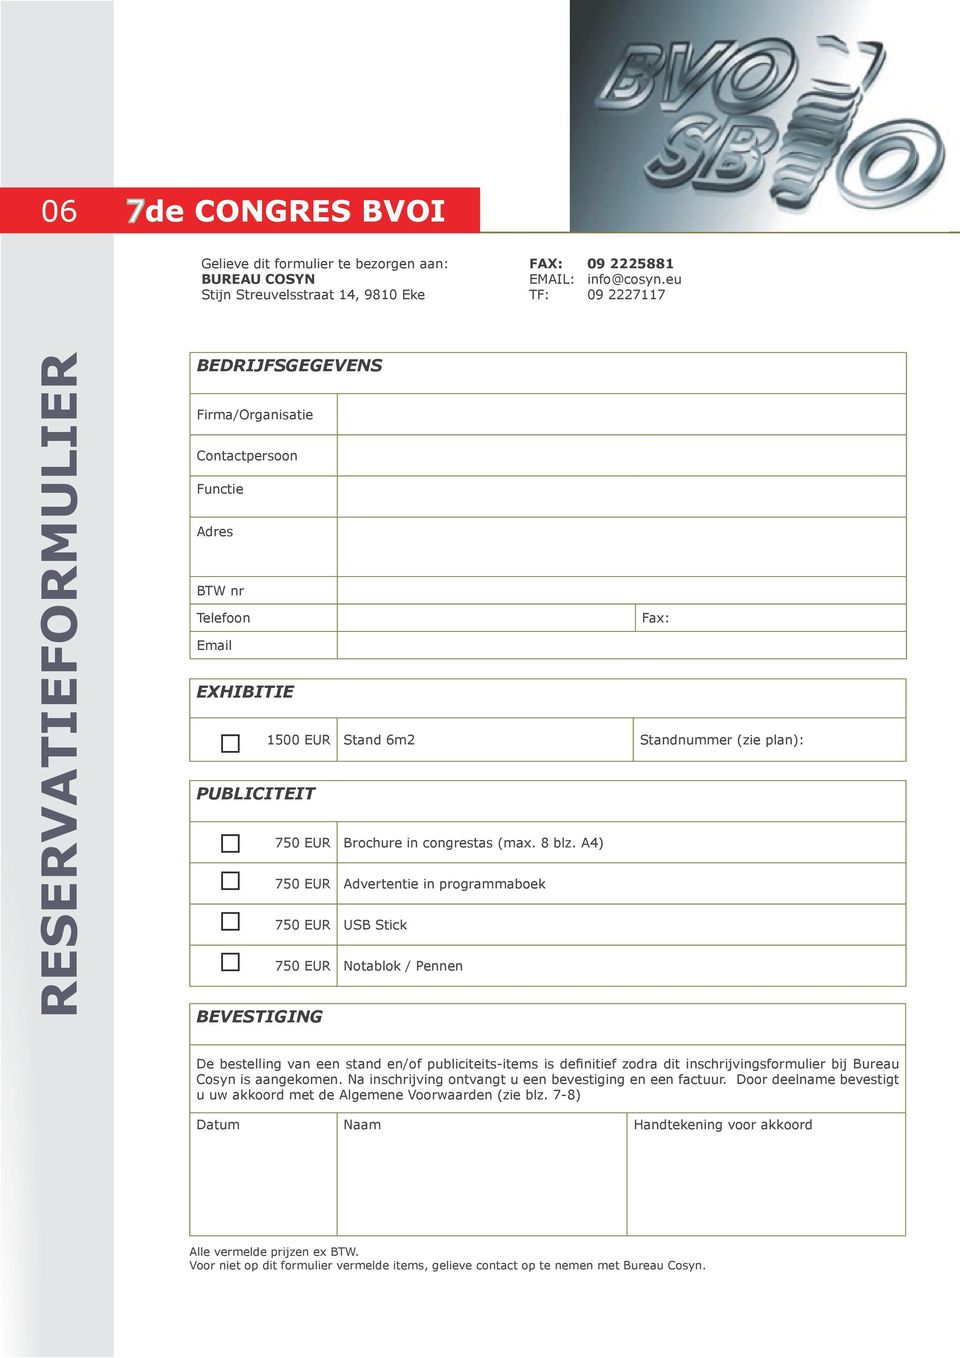 EUR Brochure in congrestas (max. 8 blz.